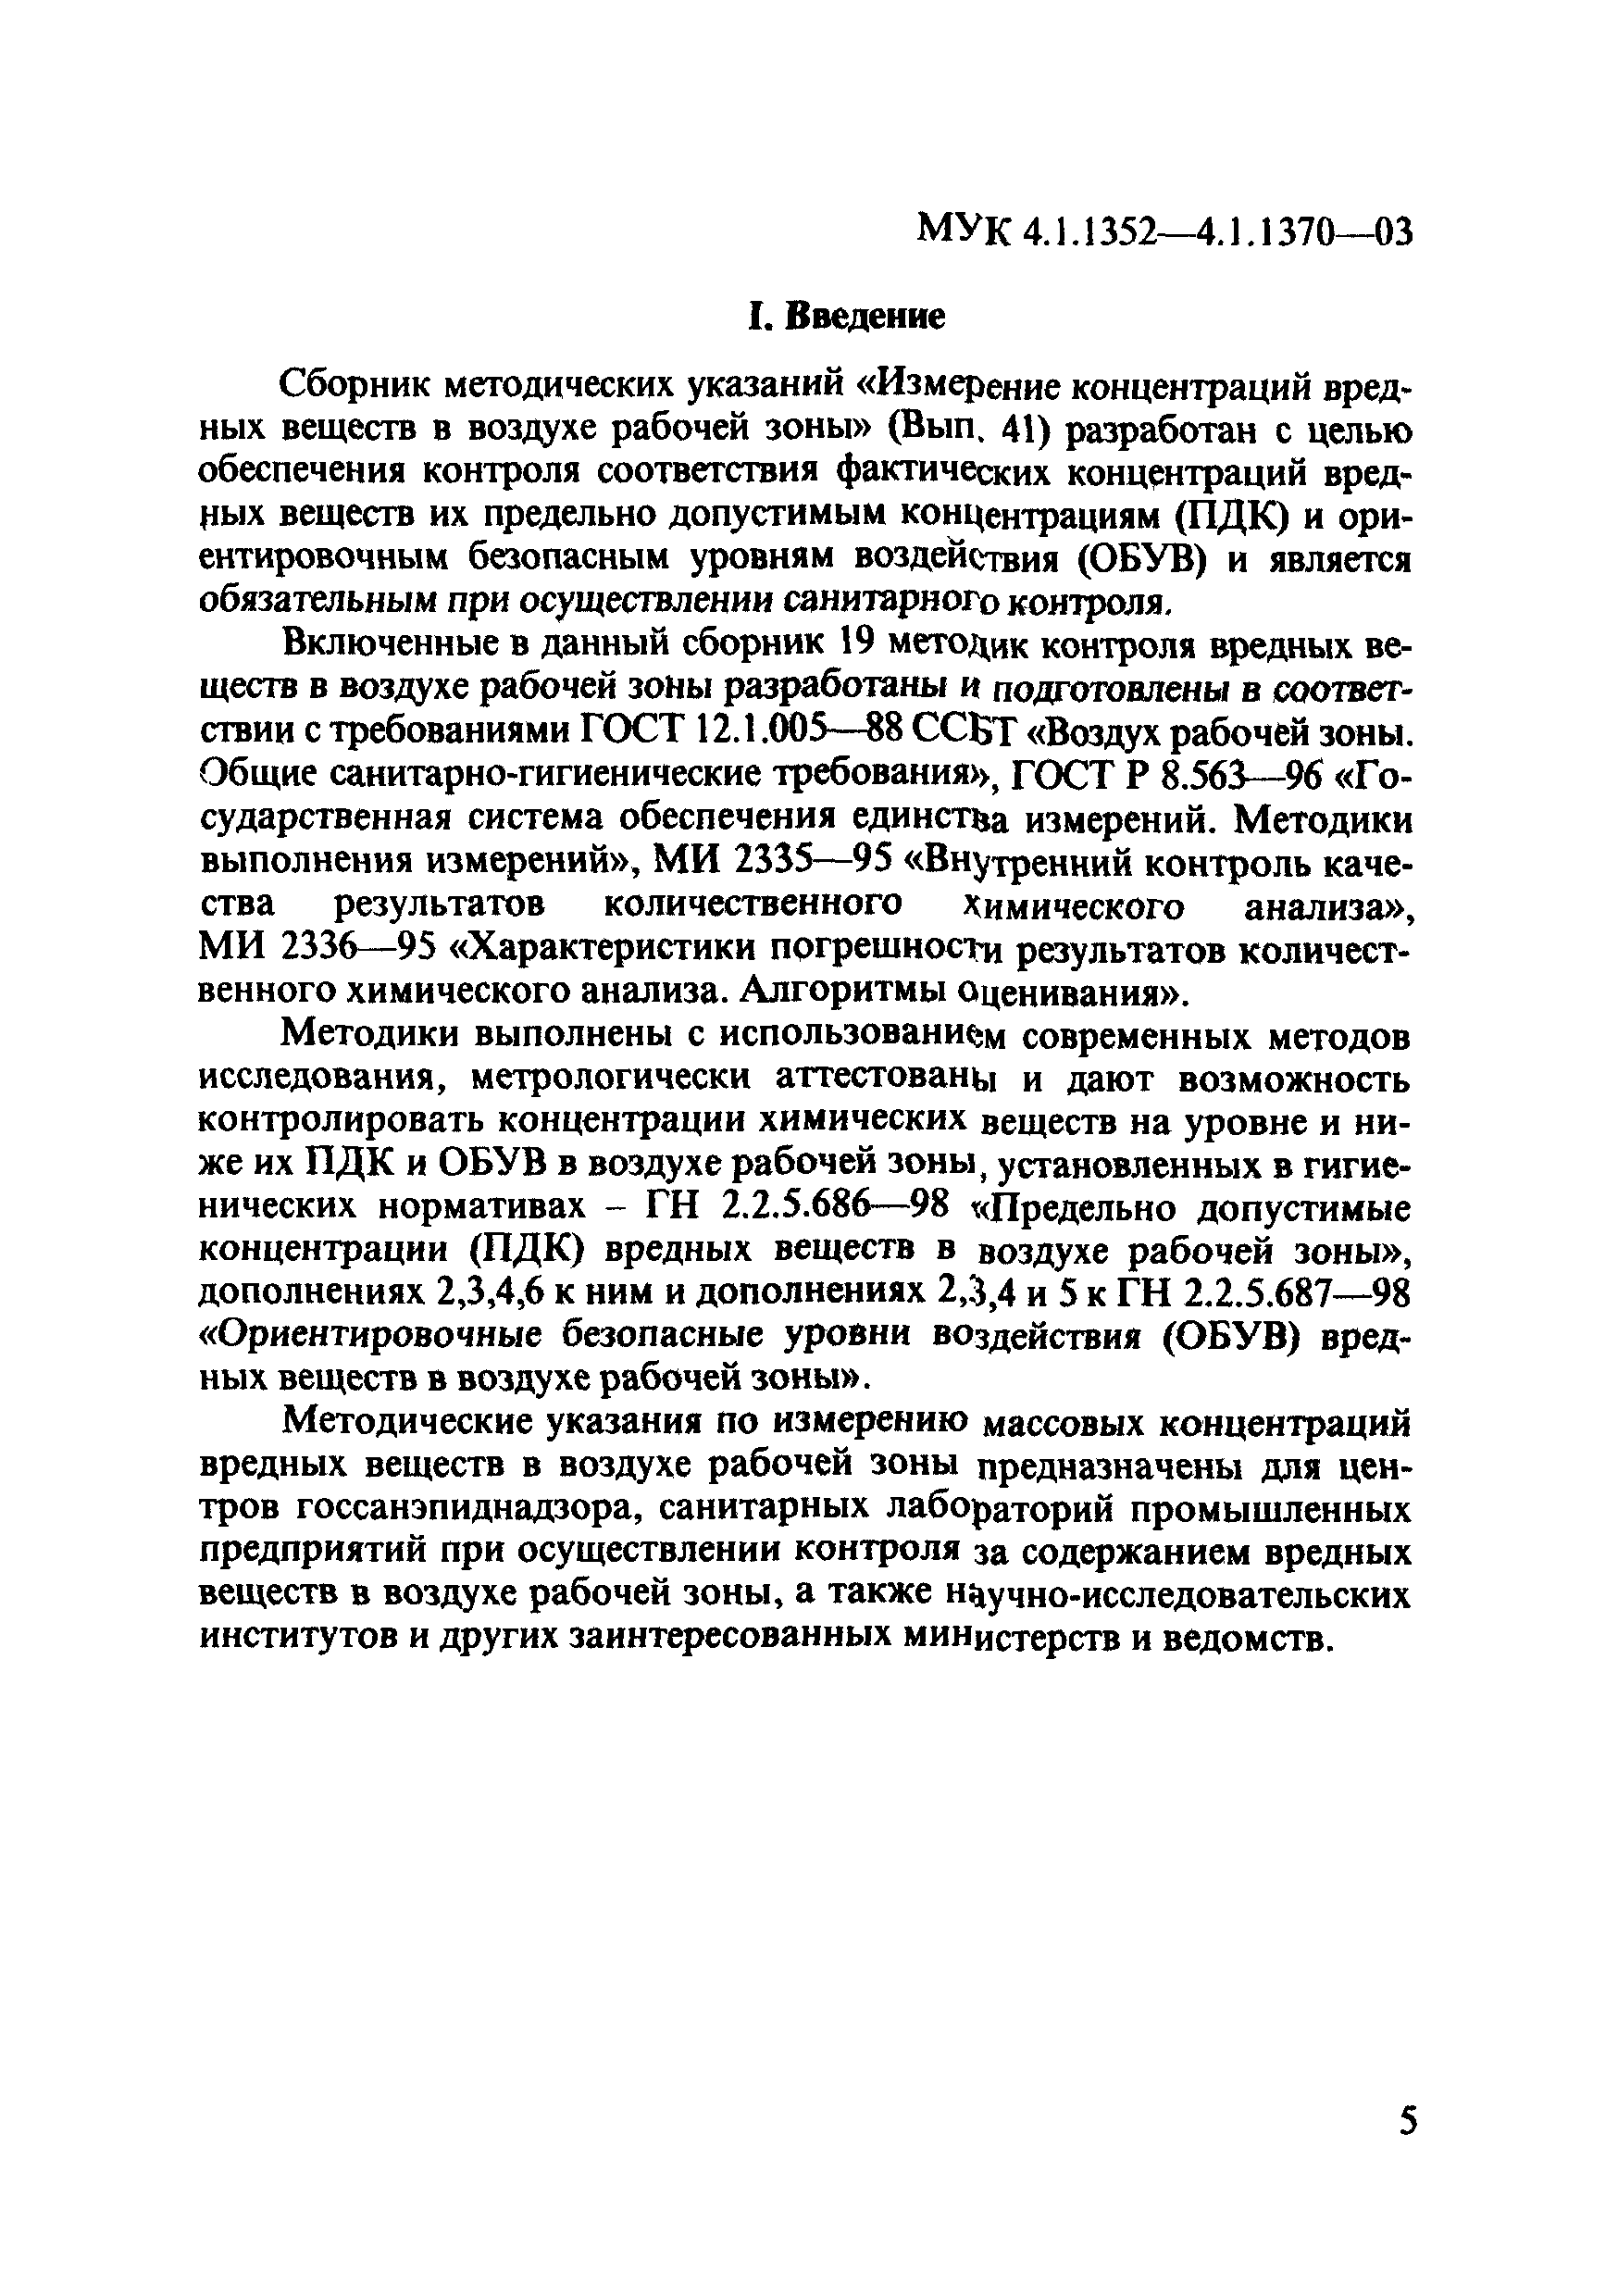 МУК 4.1.1360-03